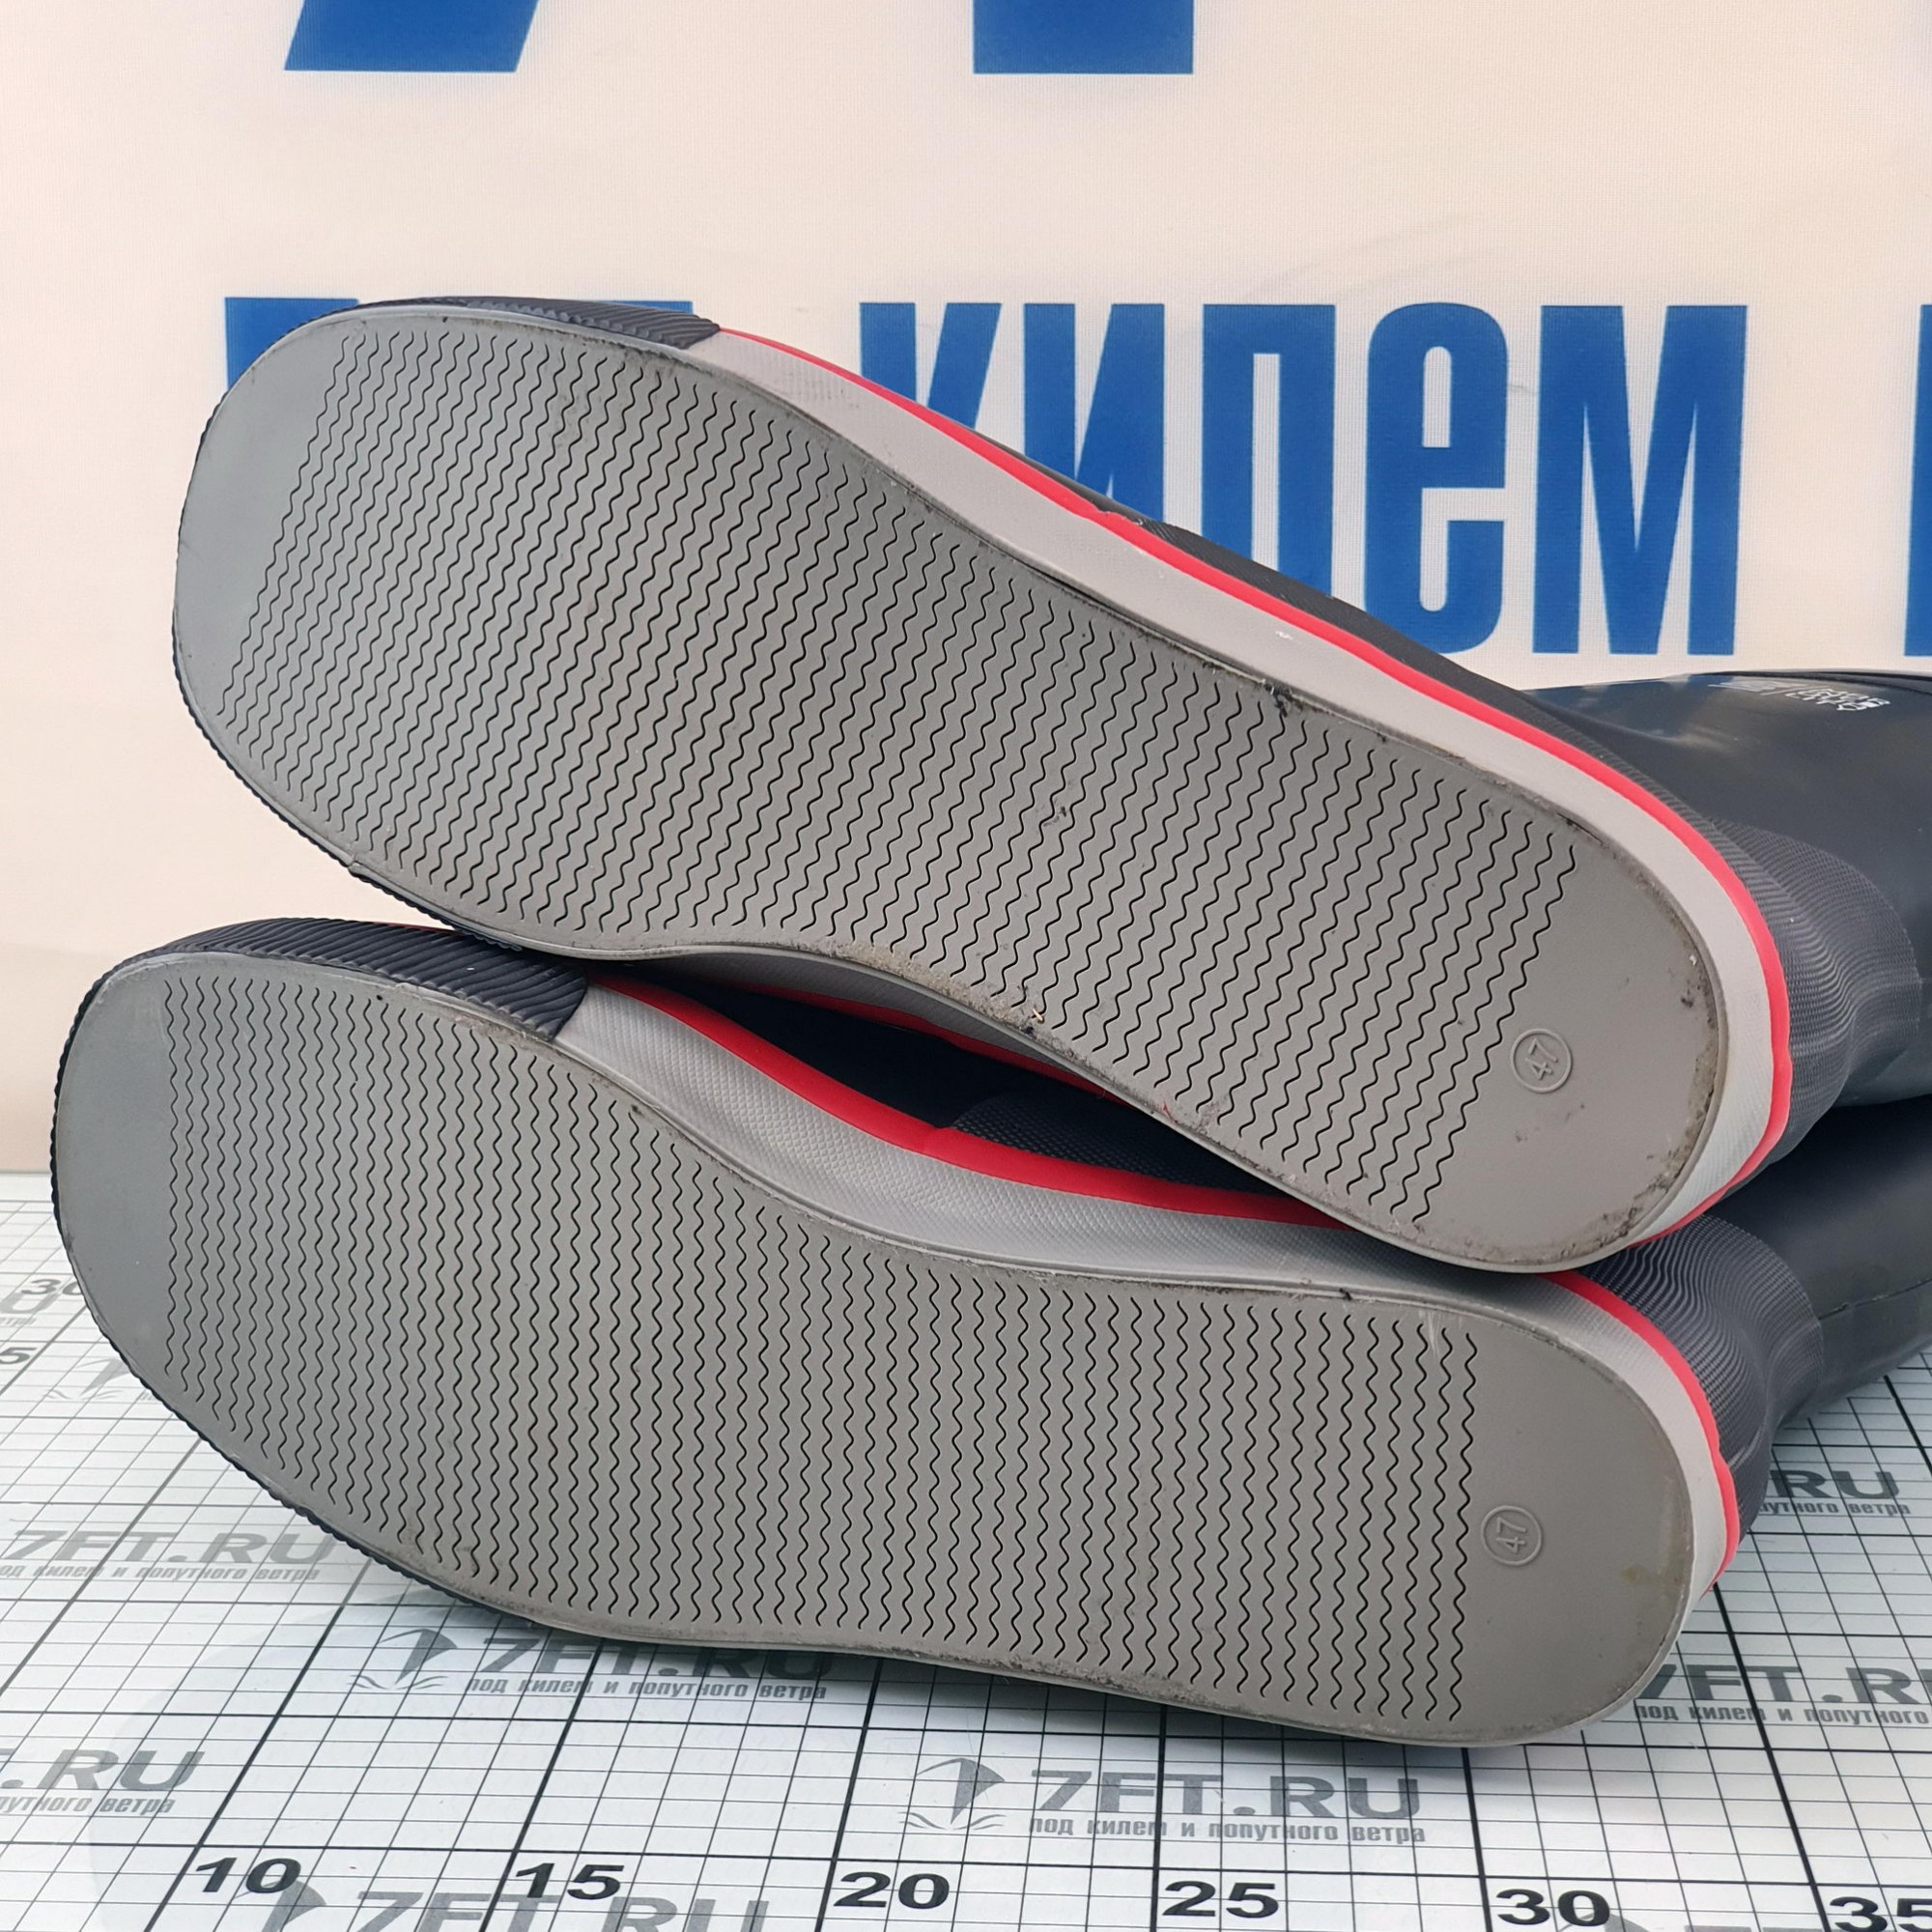 Купить Резиновые сапоги Marine Quality 30.3920-47 серые 47 размер 7ft.ru в интернет магазине Семь Футов